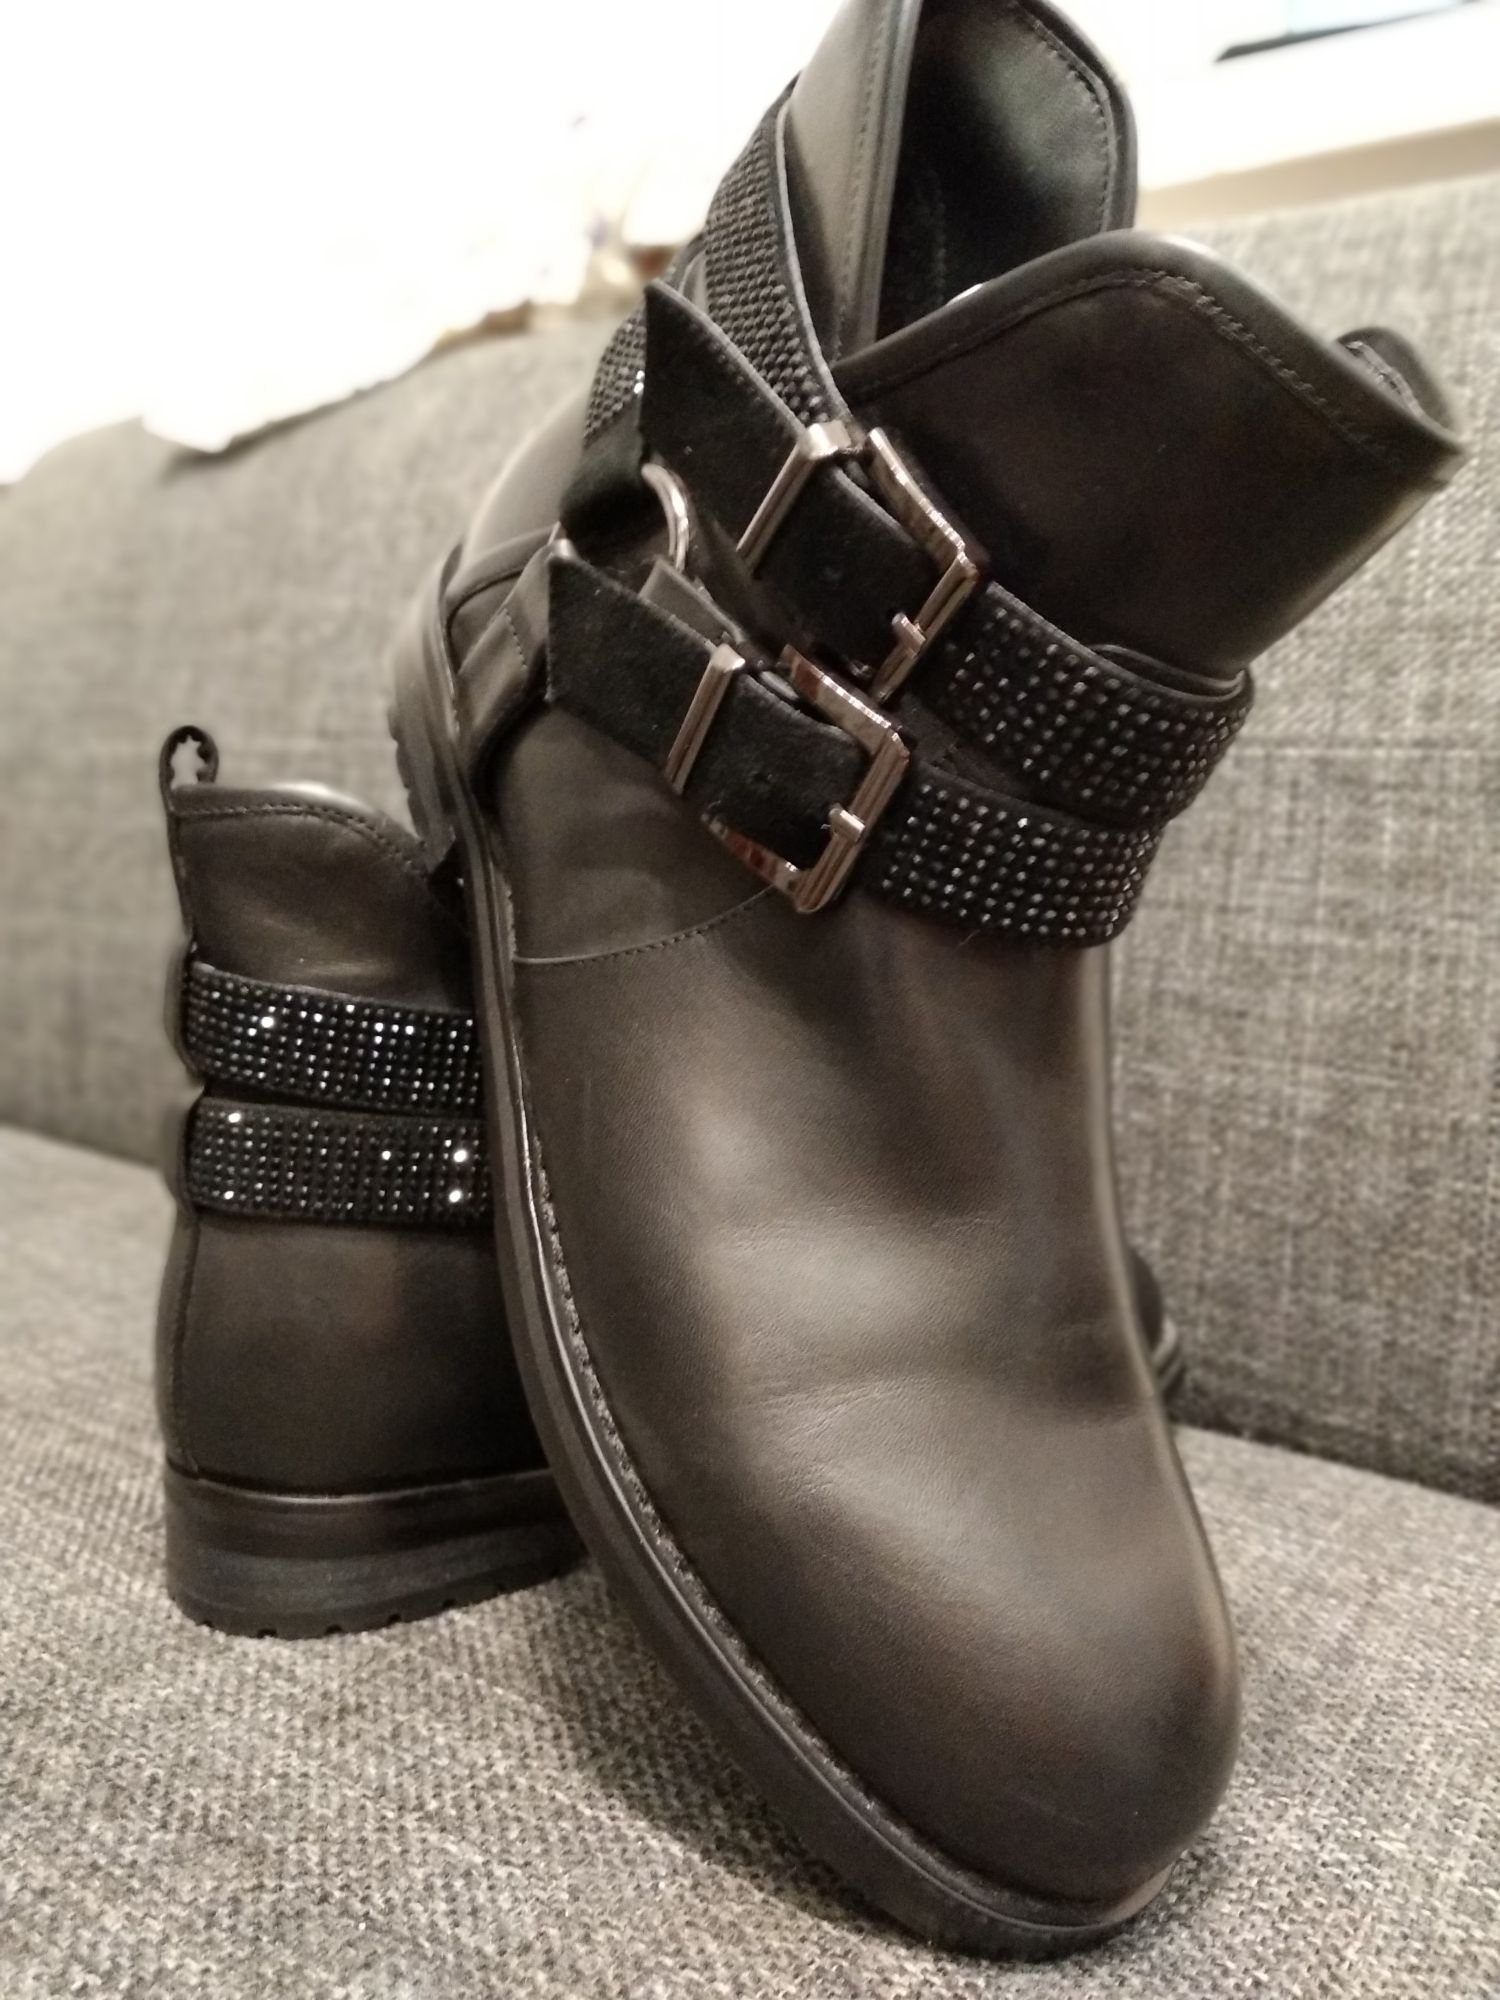 Ботинки сапоги кожаные Vitto Rossi черные демисезонные 38 размер